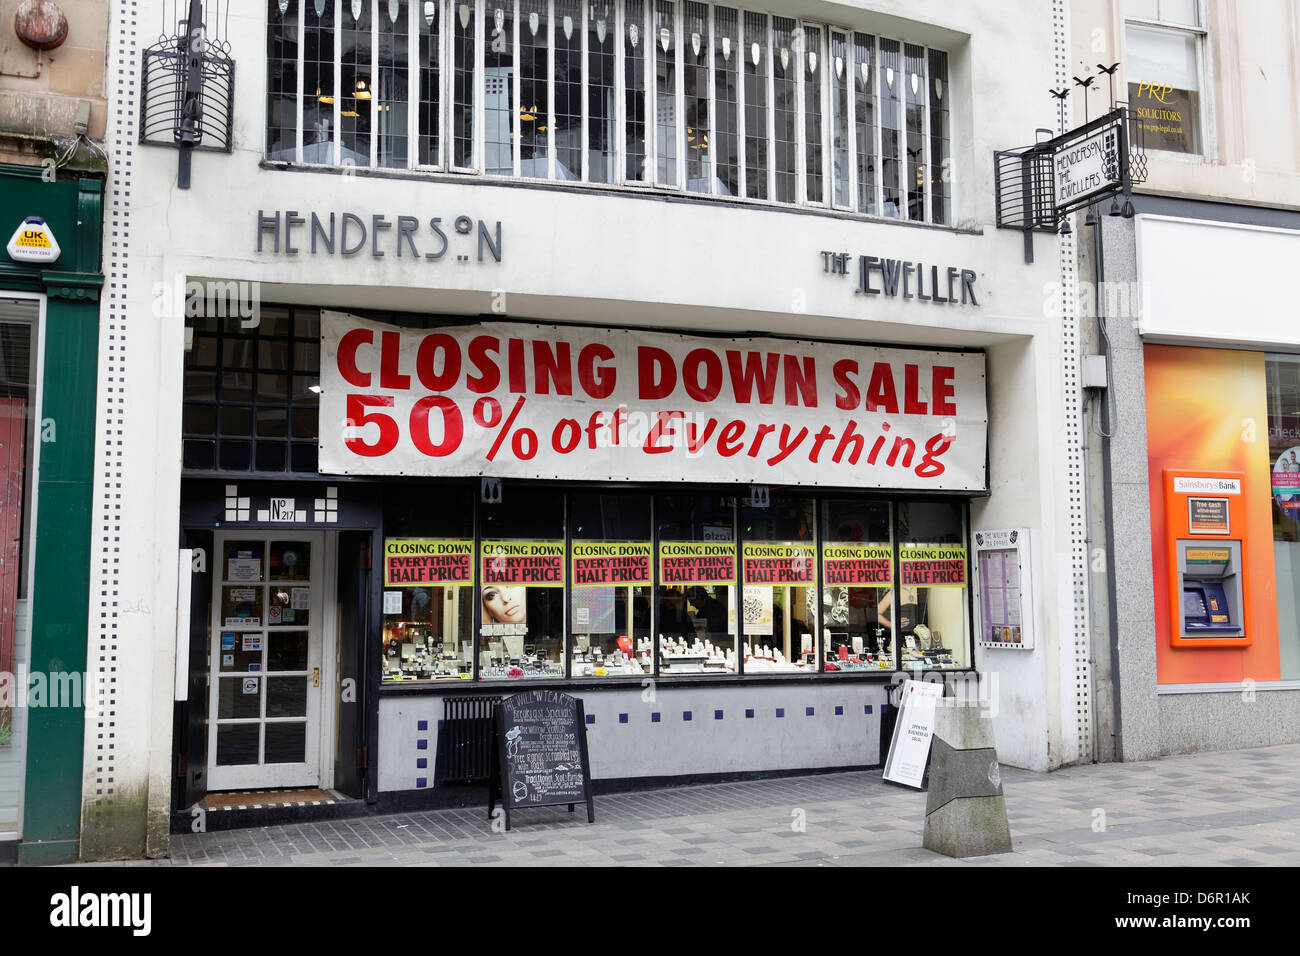 Ce magasin est fermé définitivement. Henderson The Jewelers Closing Down sale, Sauchiehall Street, centre-ville de Glasgow, Écosse, Royaume-Uni Banque D'Images